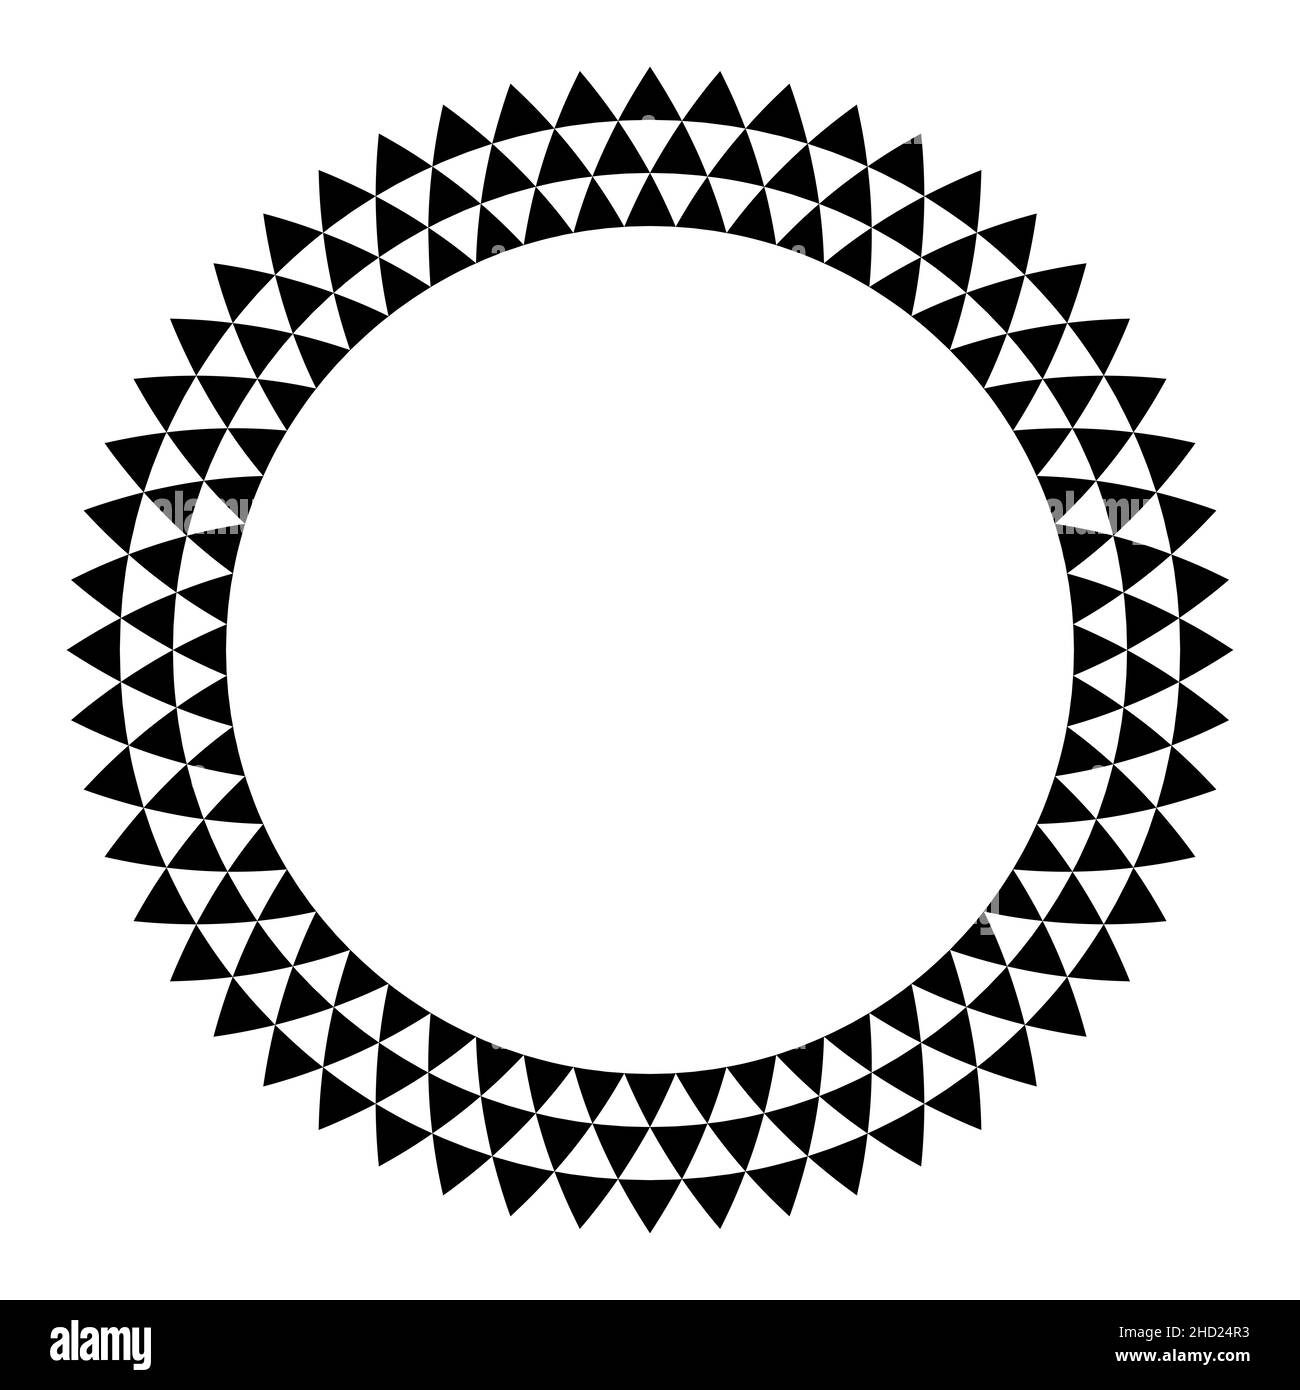 Cadre circulaire avec motif triangulaire.Trois rangées de triangles noirs, créant une bordure ronde, avec un motif strié et triangulaires en damier. Banque D'Images